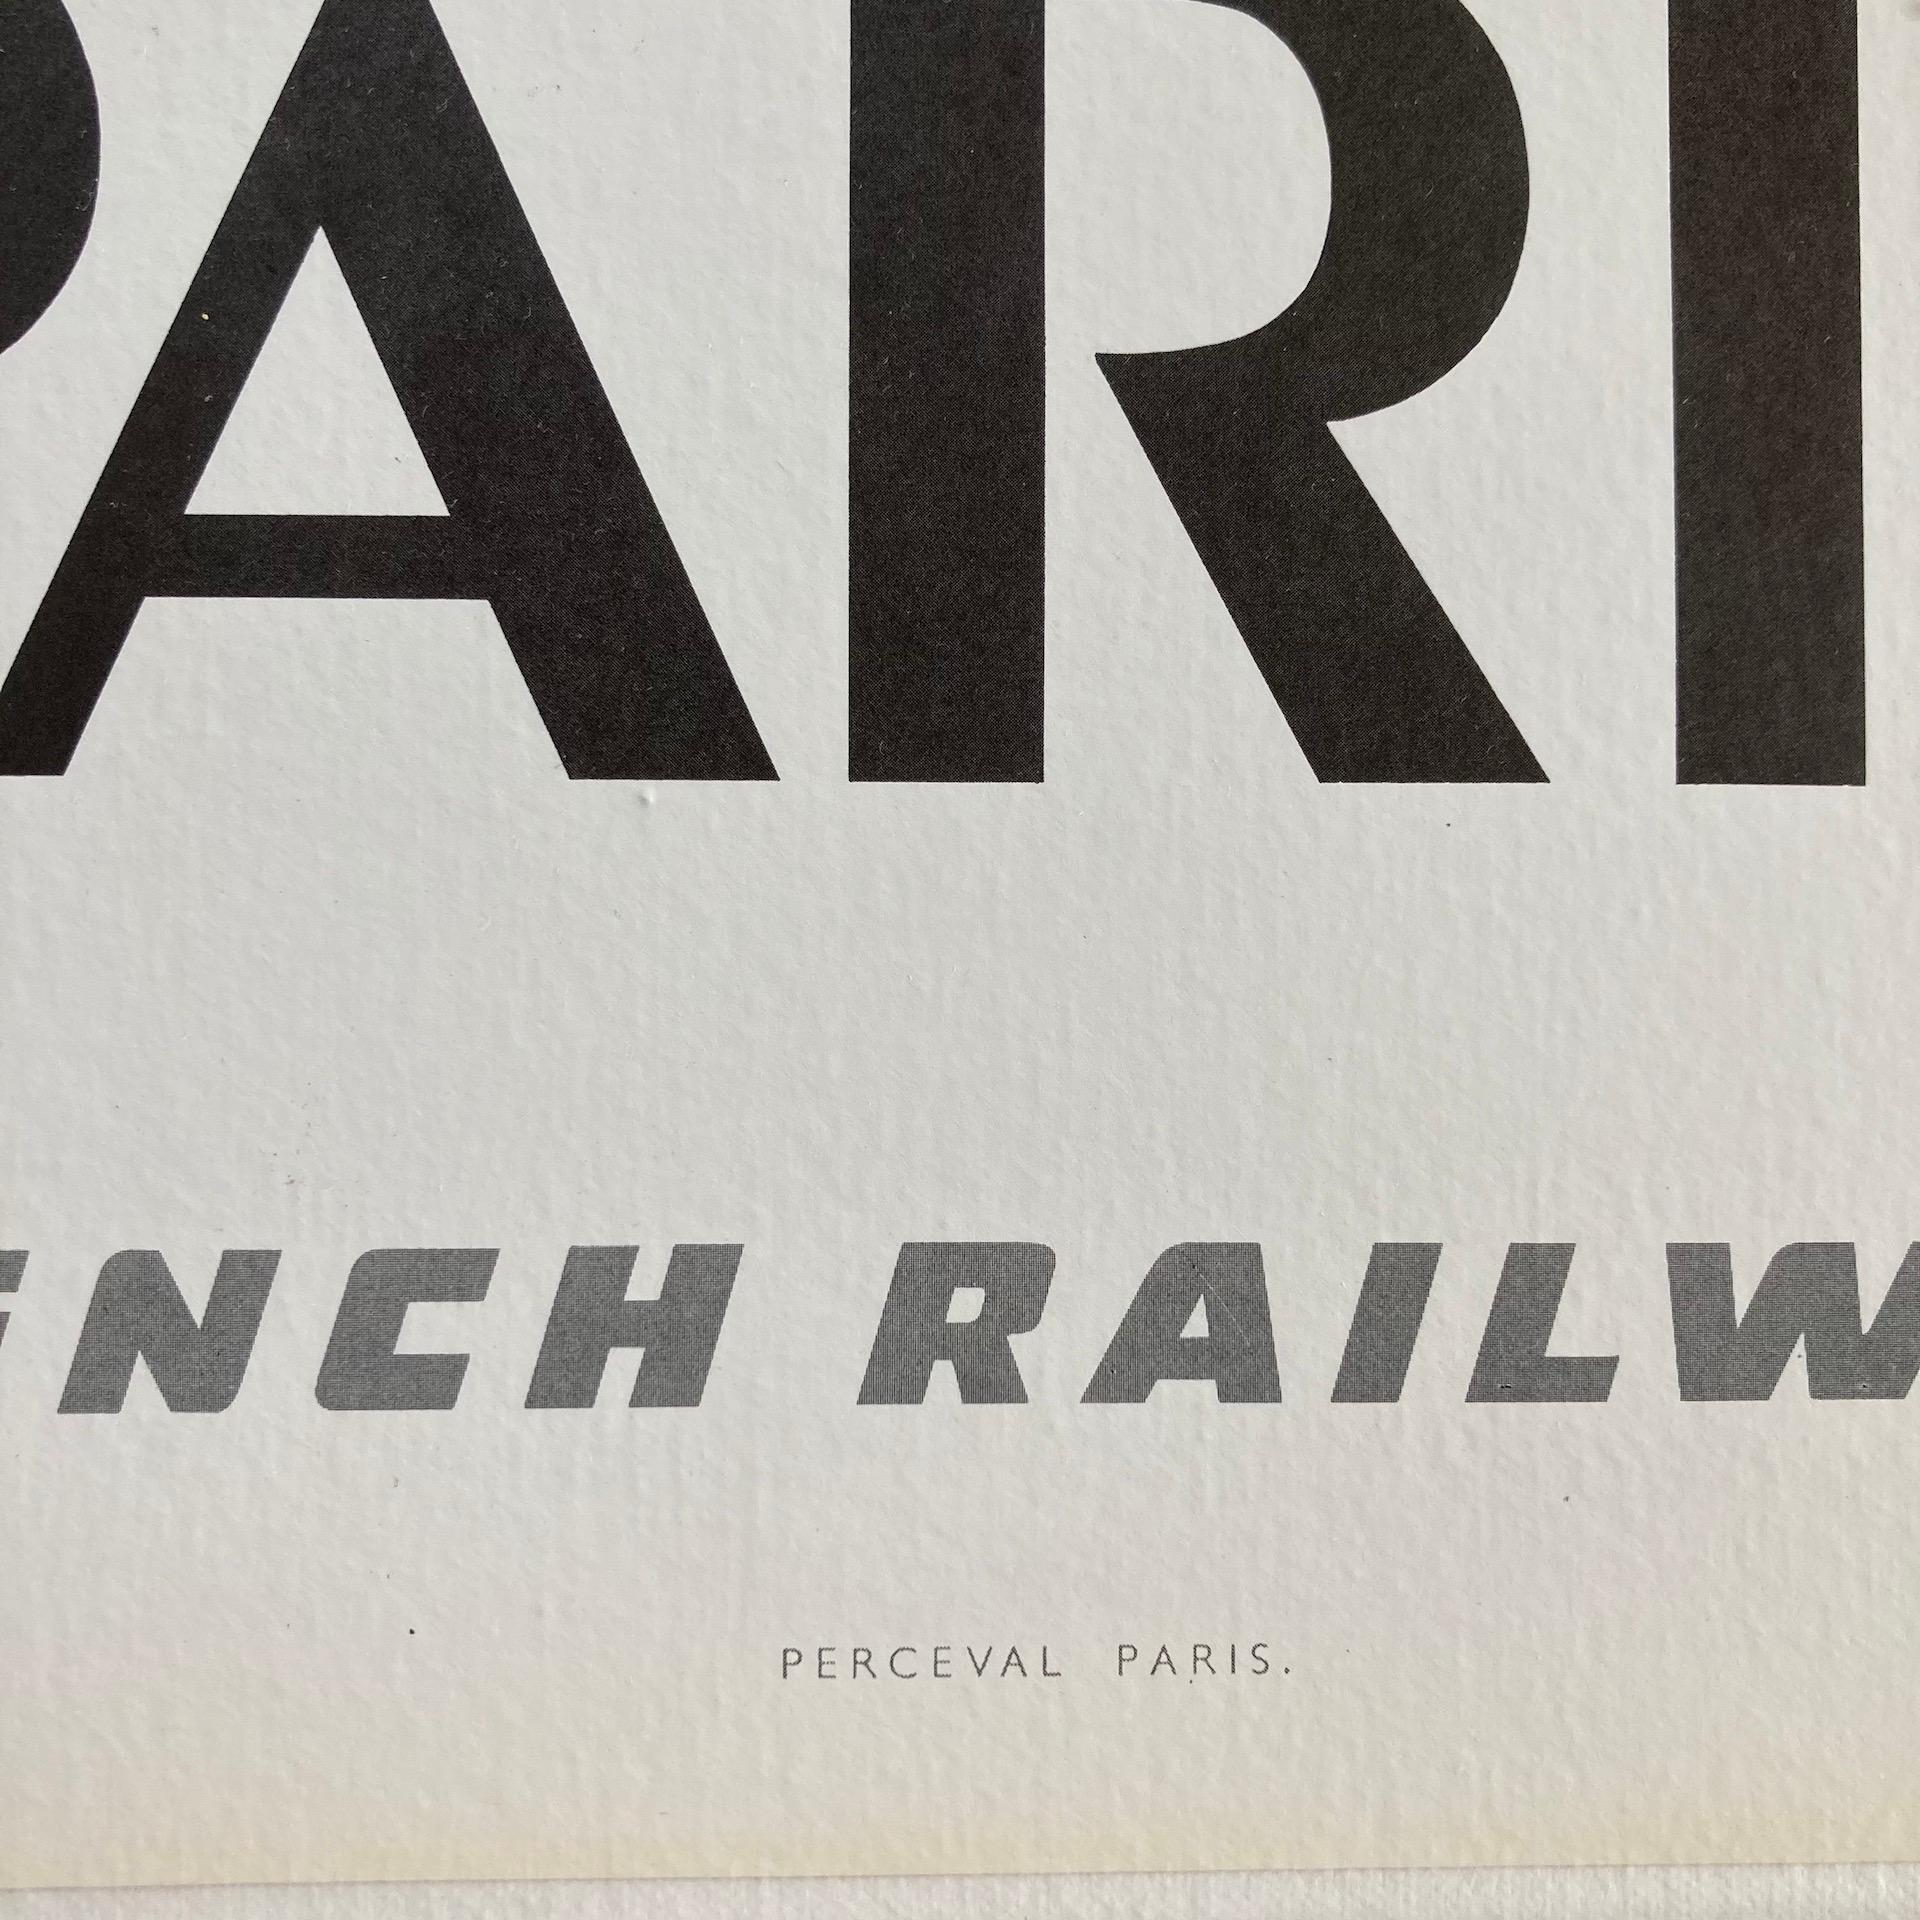 Linen French Railways SNCF 1967 Paris Travel Poster, Bernard Buffet